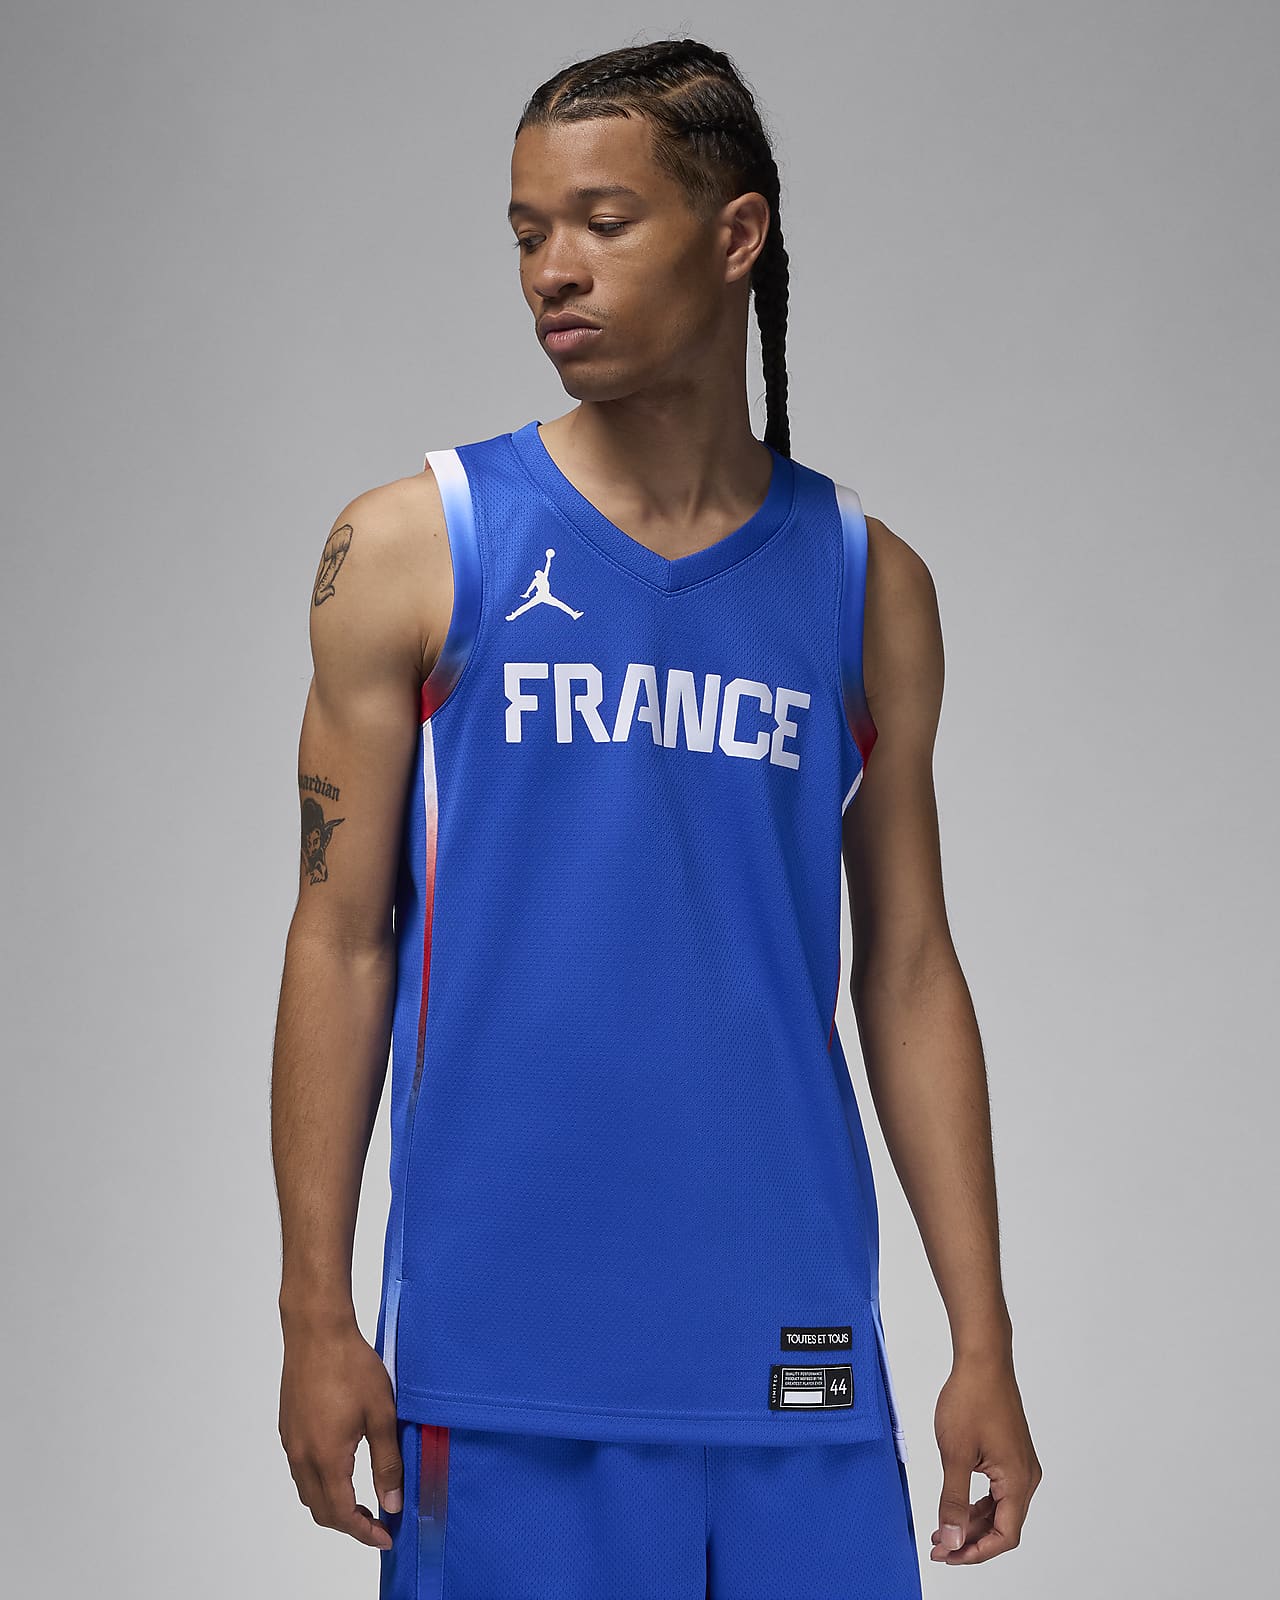 Frankrijk Limited Road Jordan basketbaljersey voor heren